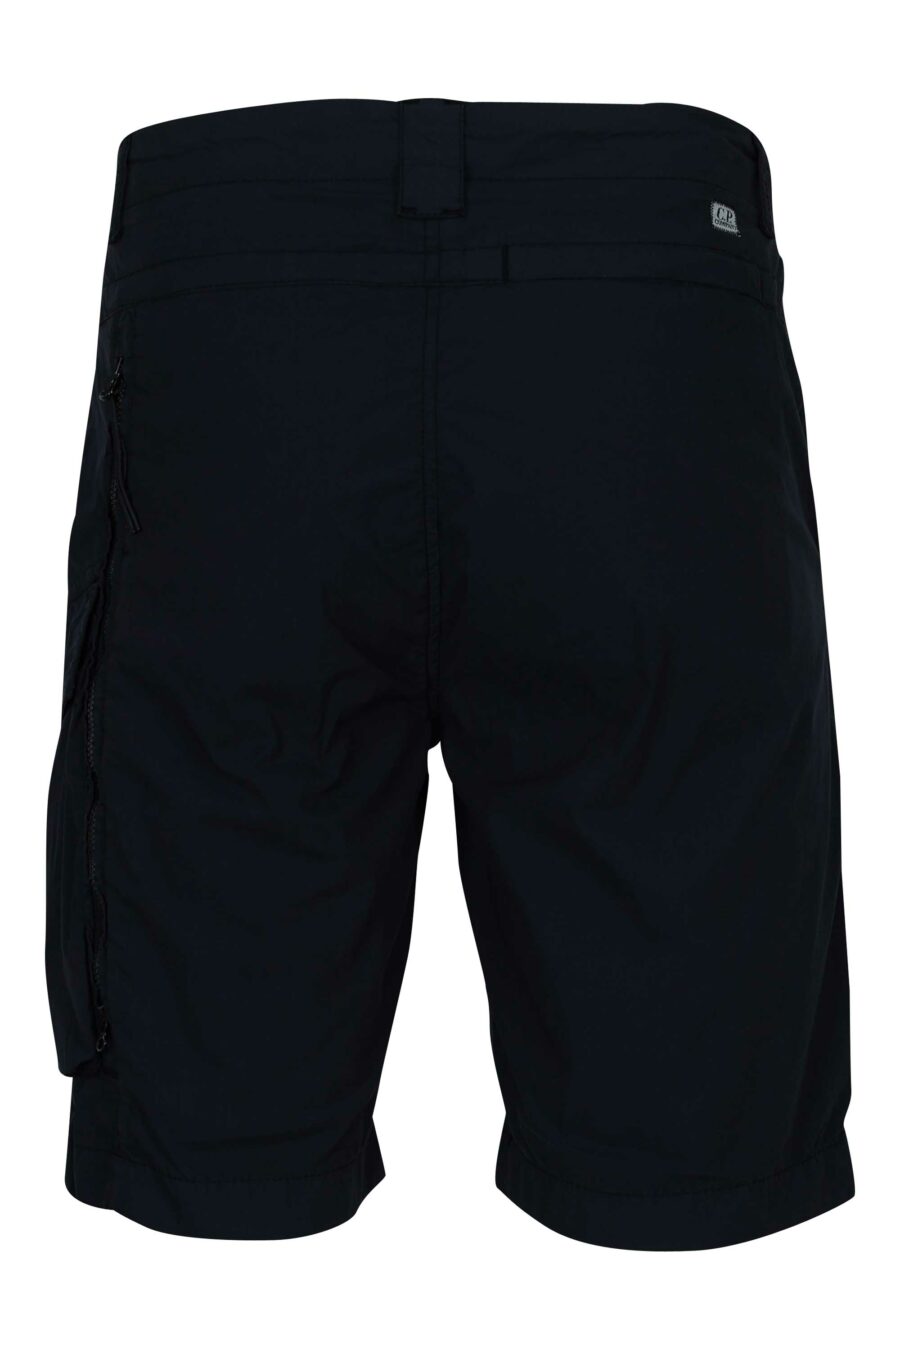 Pantalón corto midi azul oscuro con minilogo lente - 7620943786507 1